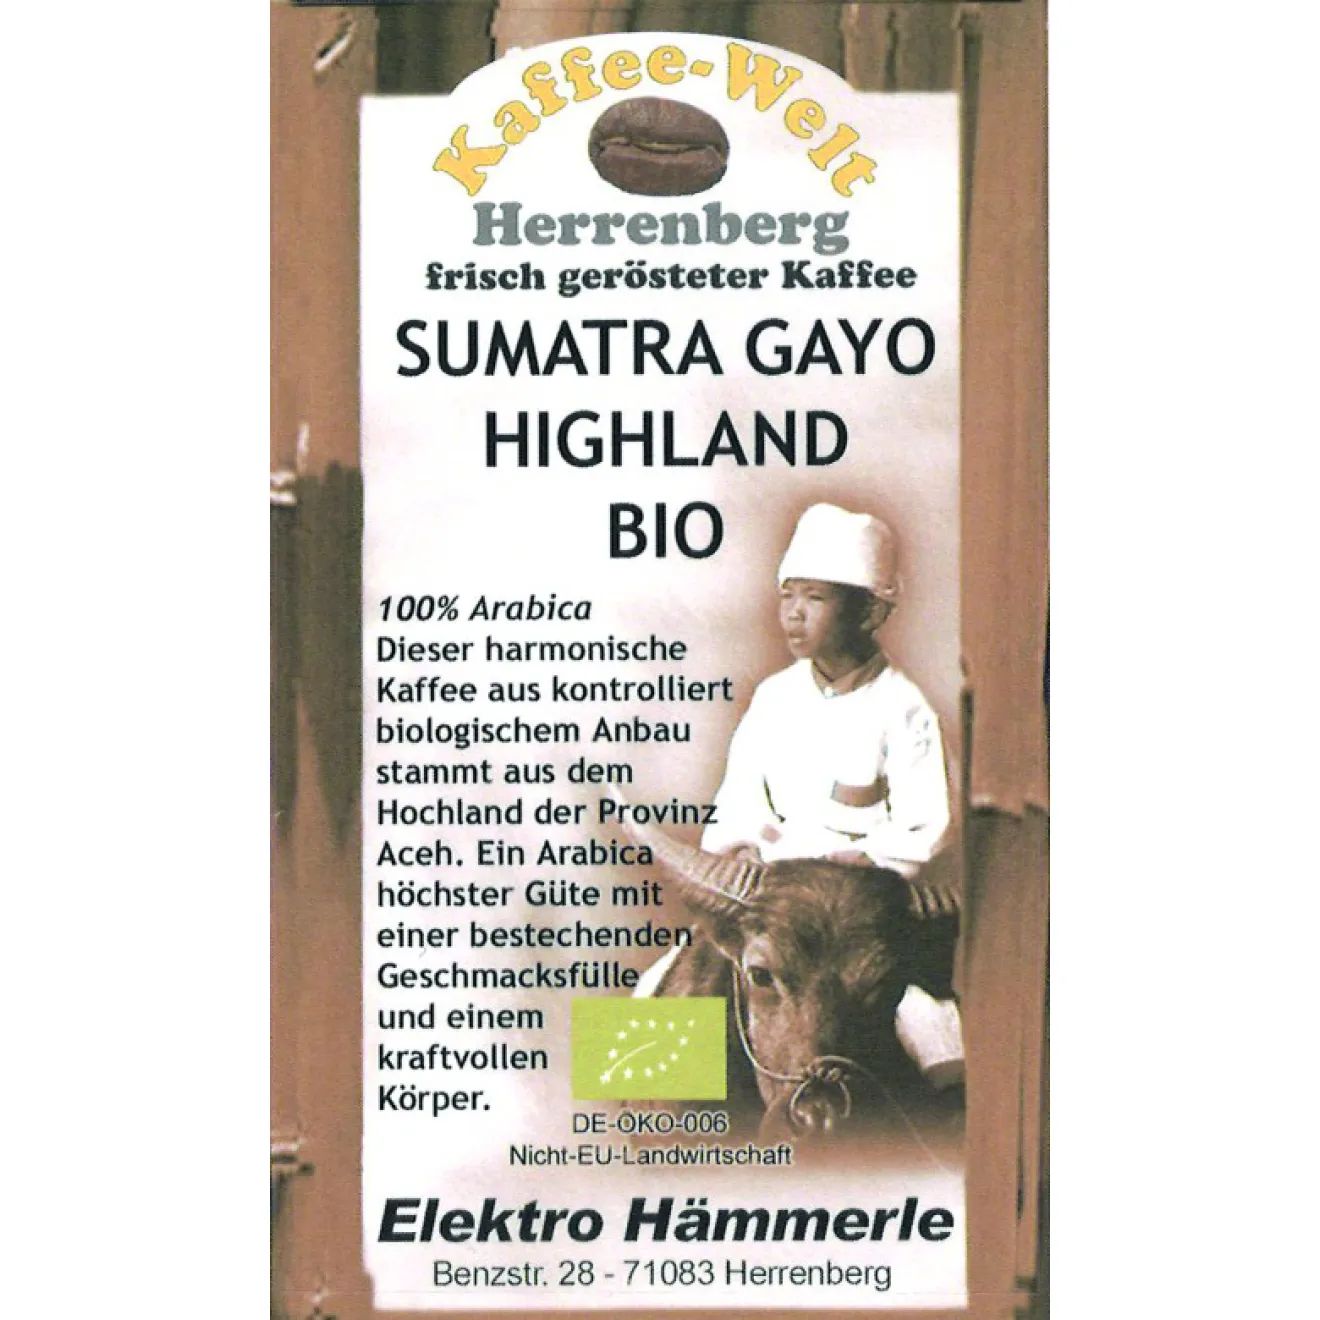 Sumatra Gayo Highland Bio